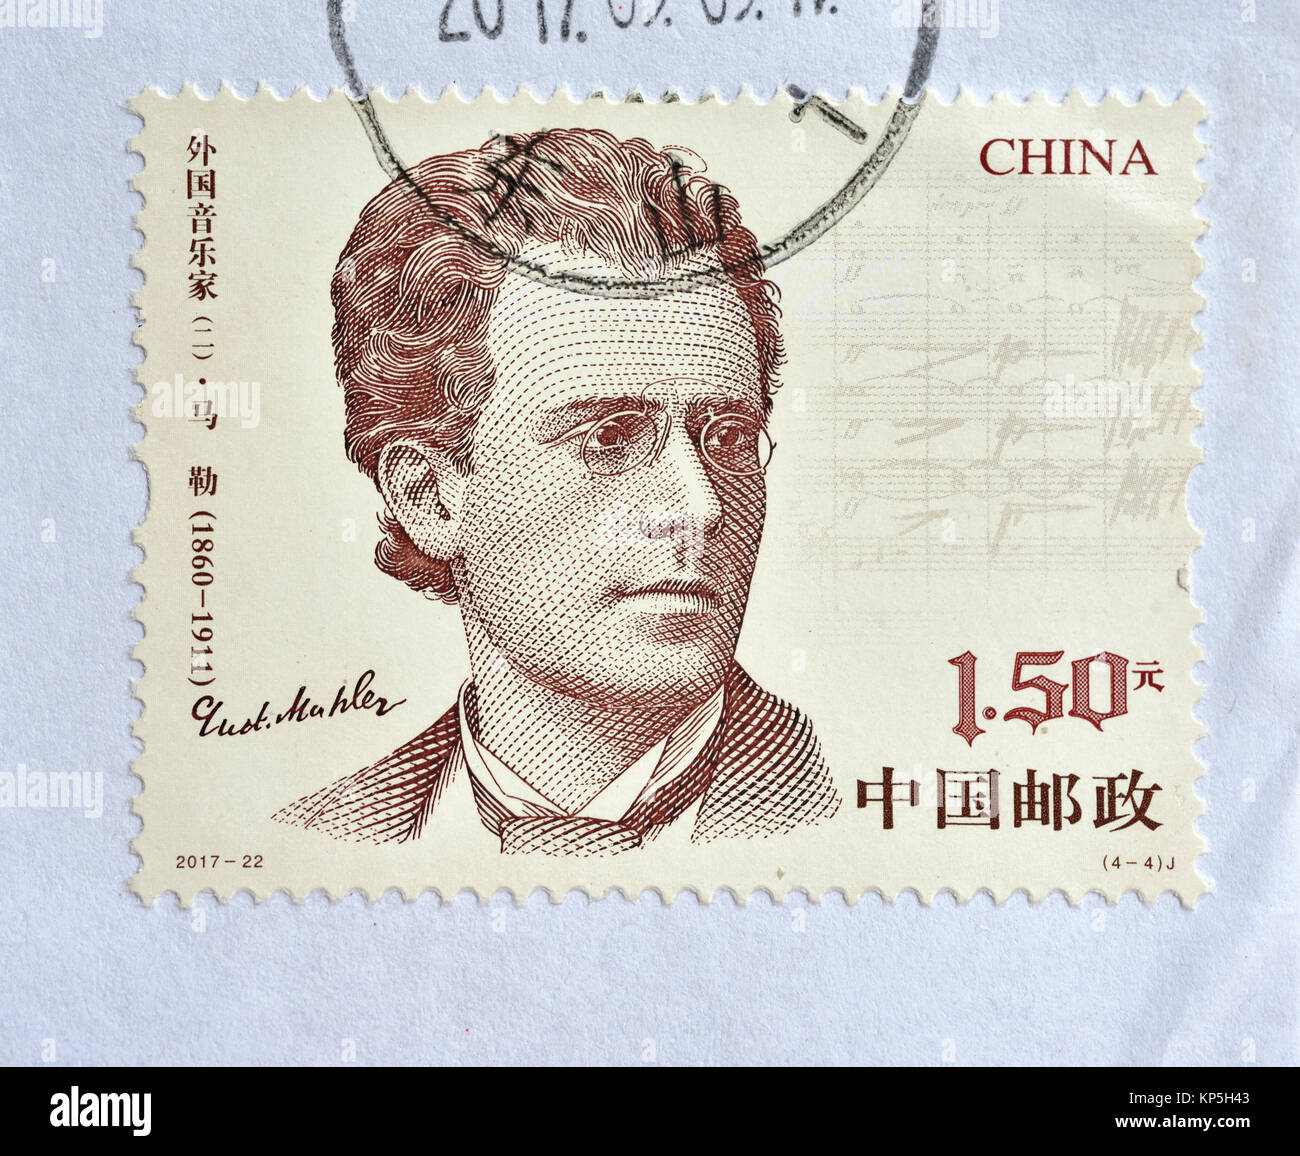 Chine - circa 2017 : timbre imprimé en Chine montre 2017-22 musiciens étrangers (2), (4-4), Gustav Mahler, 150 fen, 44 * 33 mm, vers 2017 Banque D'Images